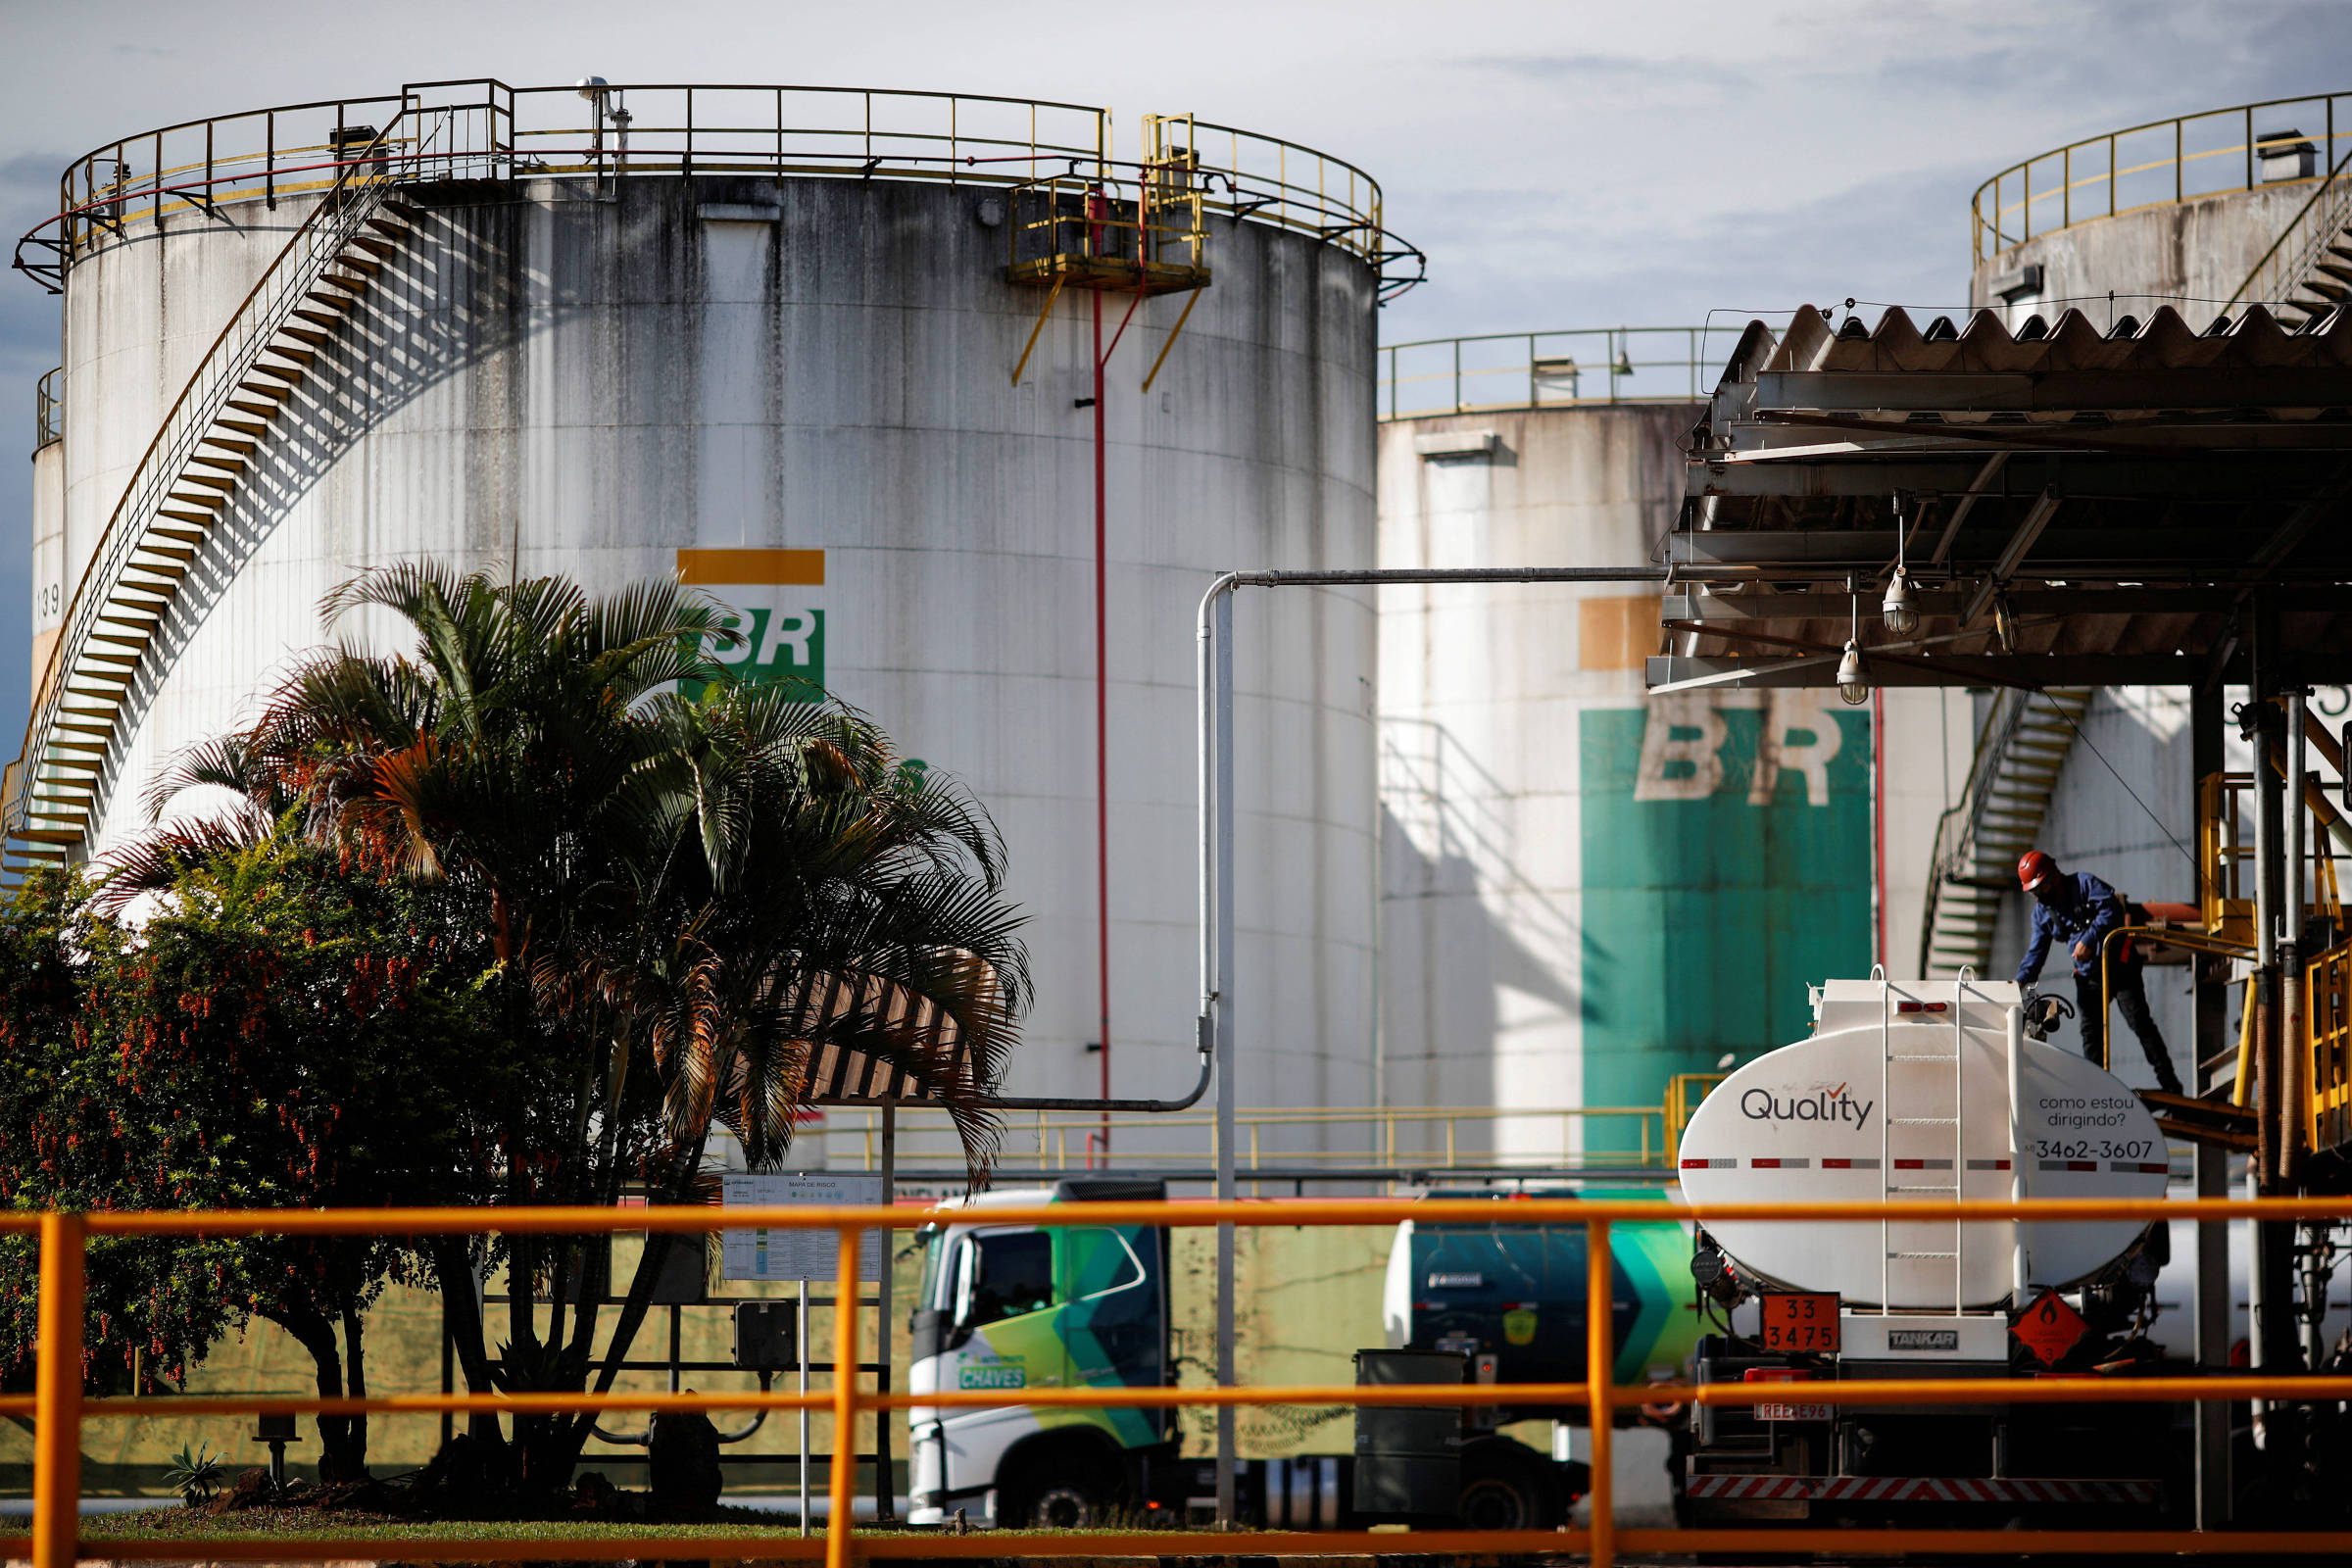 Dividendo elevado gera críticas a estratégia da Petrobras – 31/07/2022 – Mercado